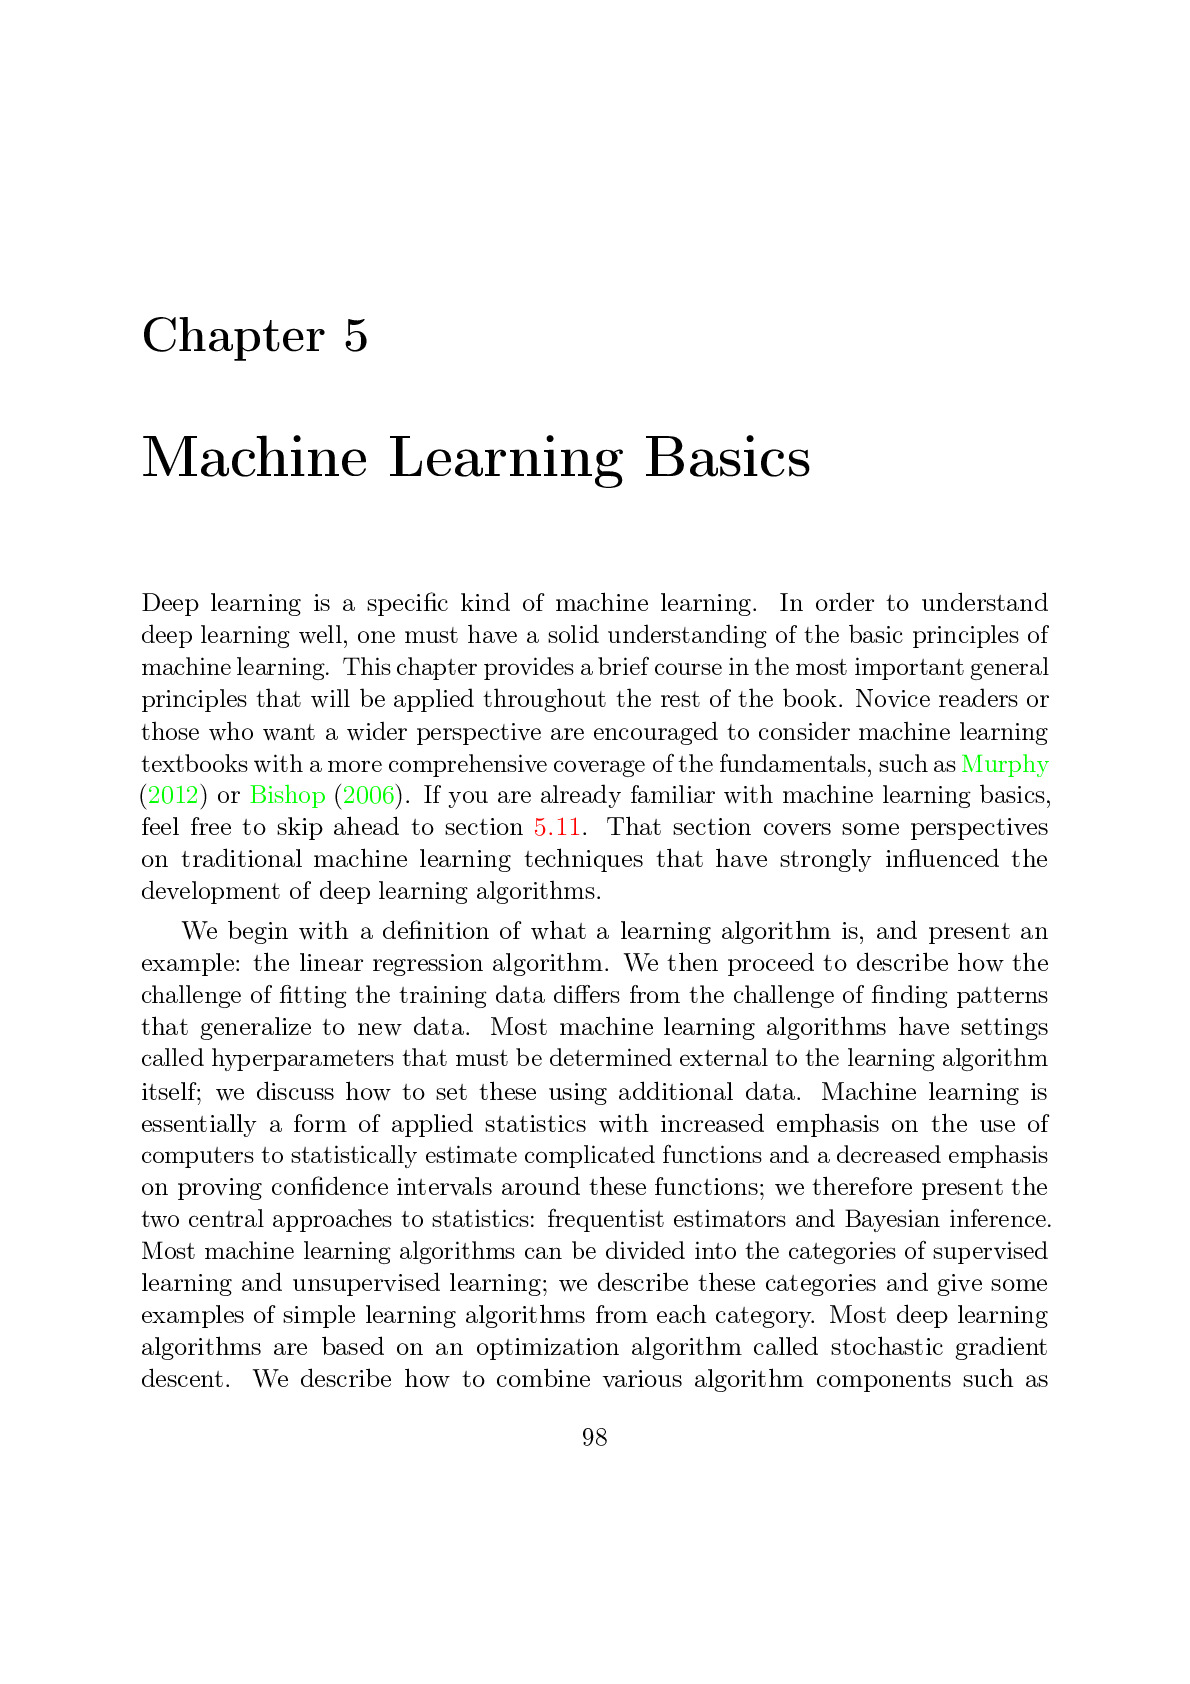 5 Machine Learning Basics